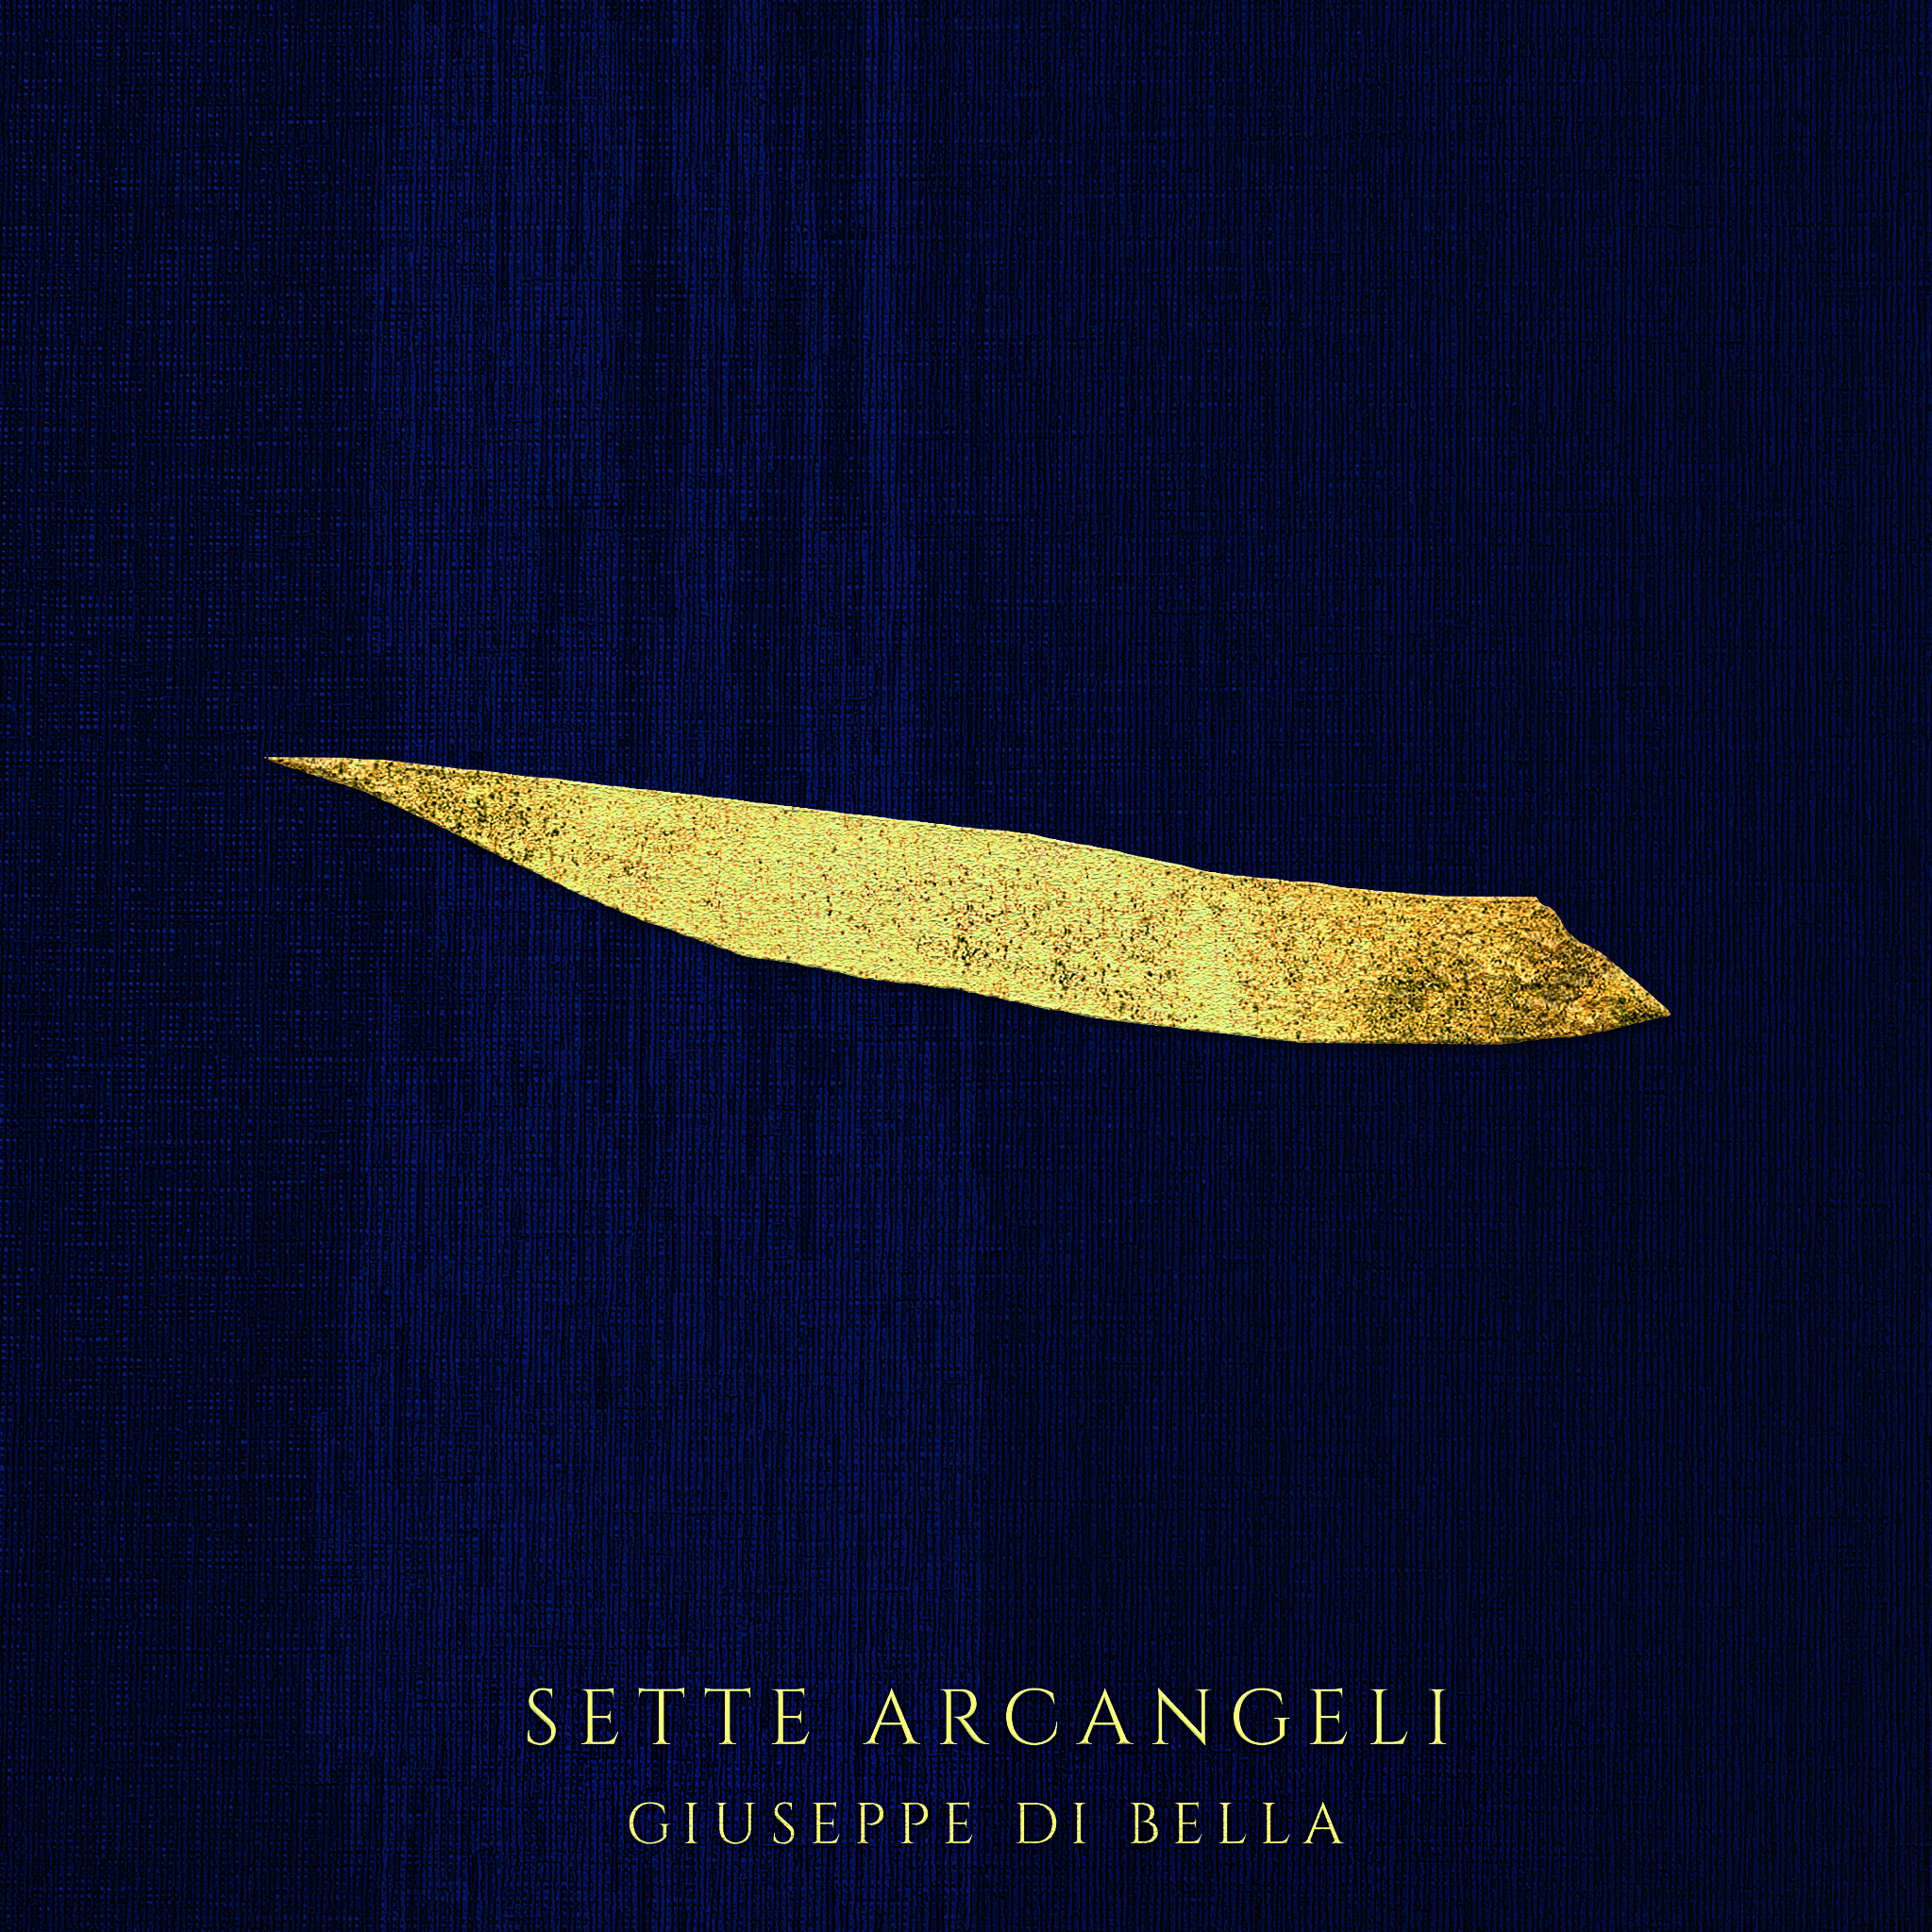 Giuseppe Di Bella, "Sette Arcangeli", nuovo album, album cover. Cantautore, poeta, interprete, autore, canzoni, canzone, Enna, Palermo, Sicilia, Almendra Music.